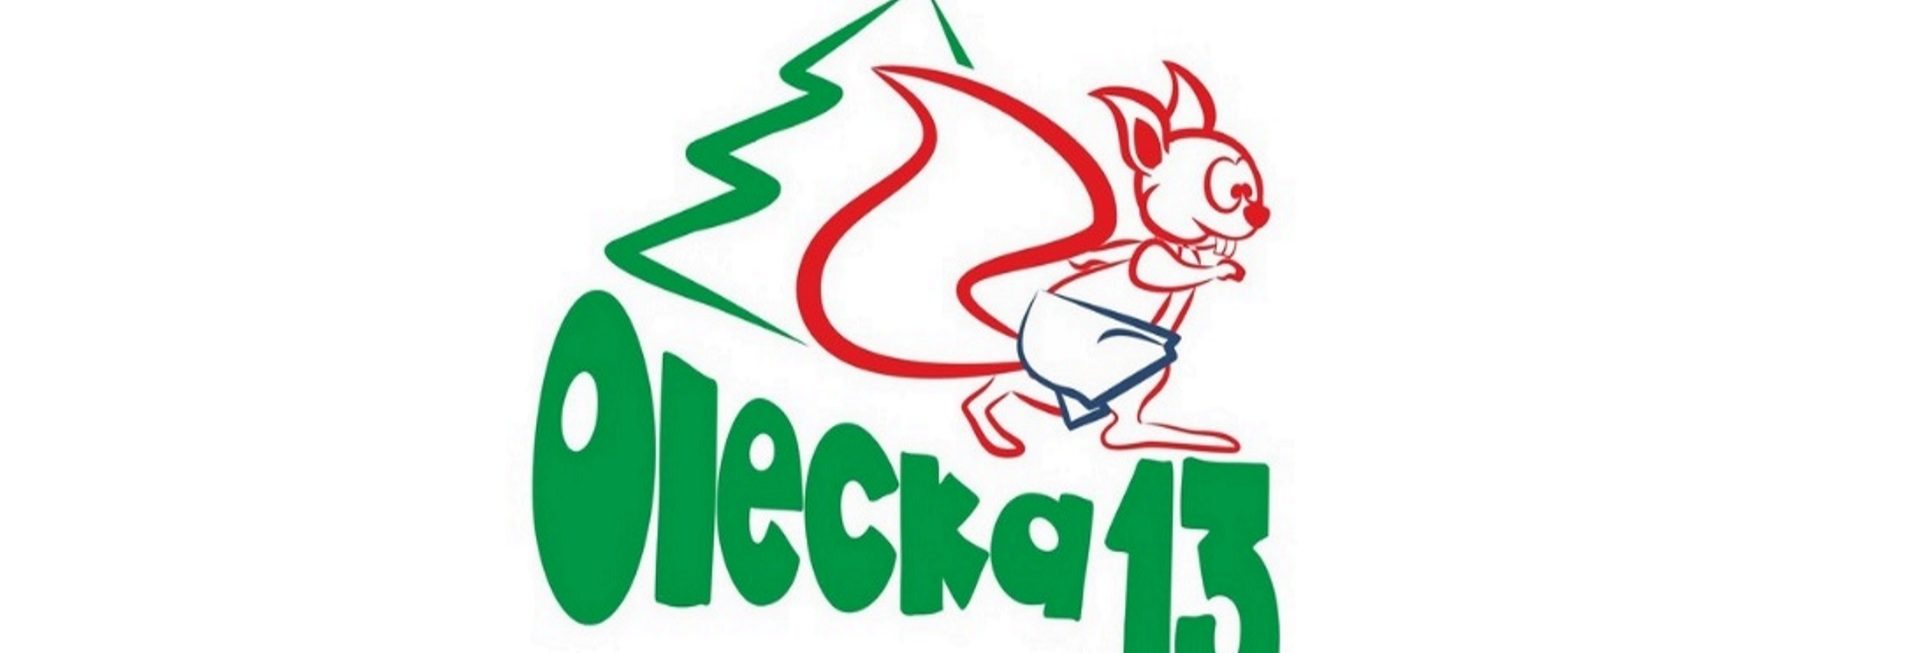 Plakat zapraszający do Olecka na kolejną edycję biegu Oleckiej Trzynastki. 